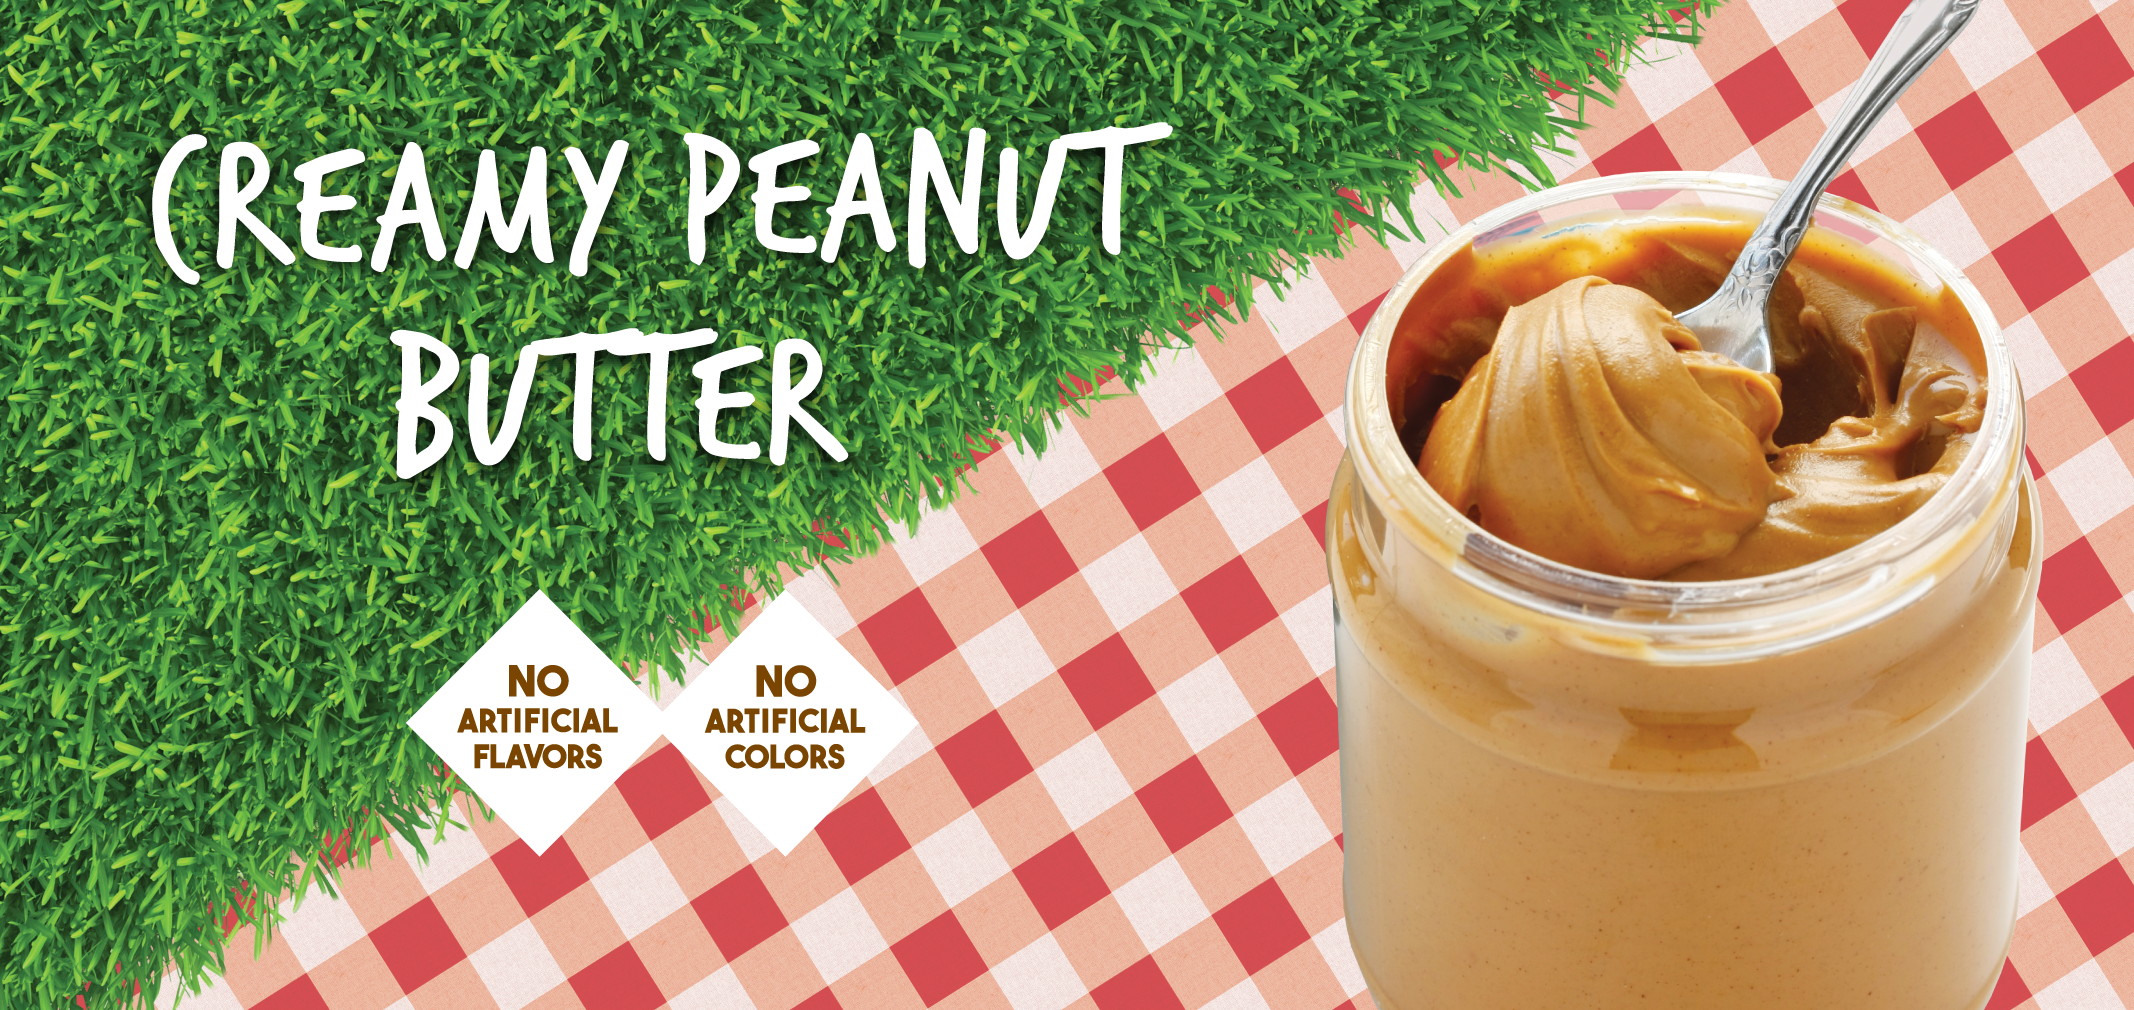 creamy peanut butter label image